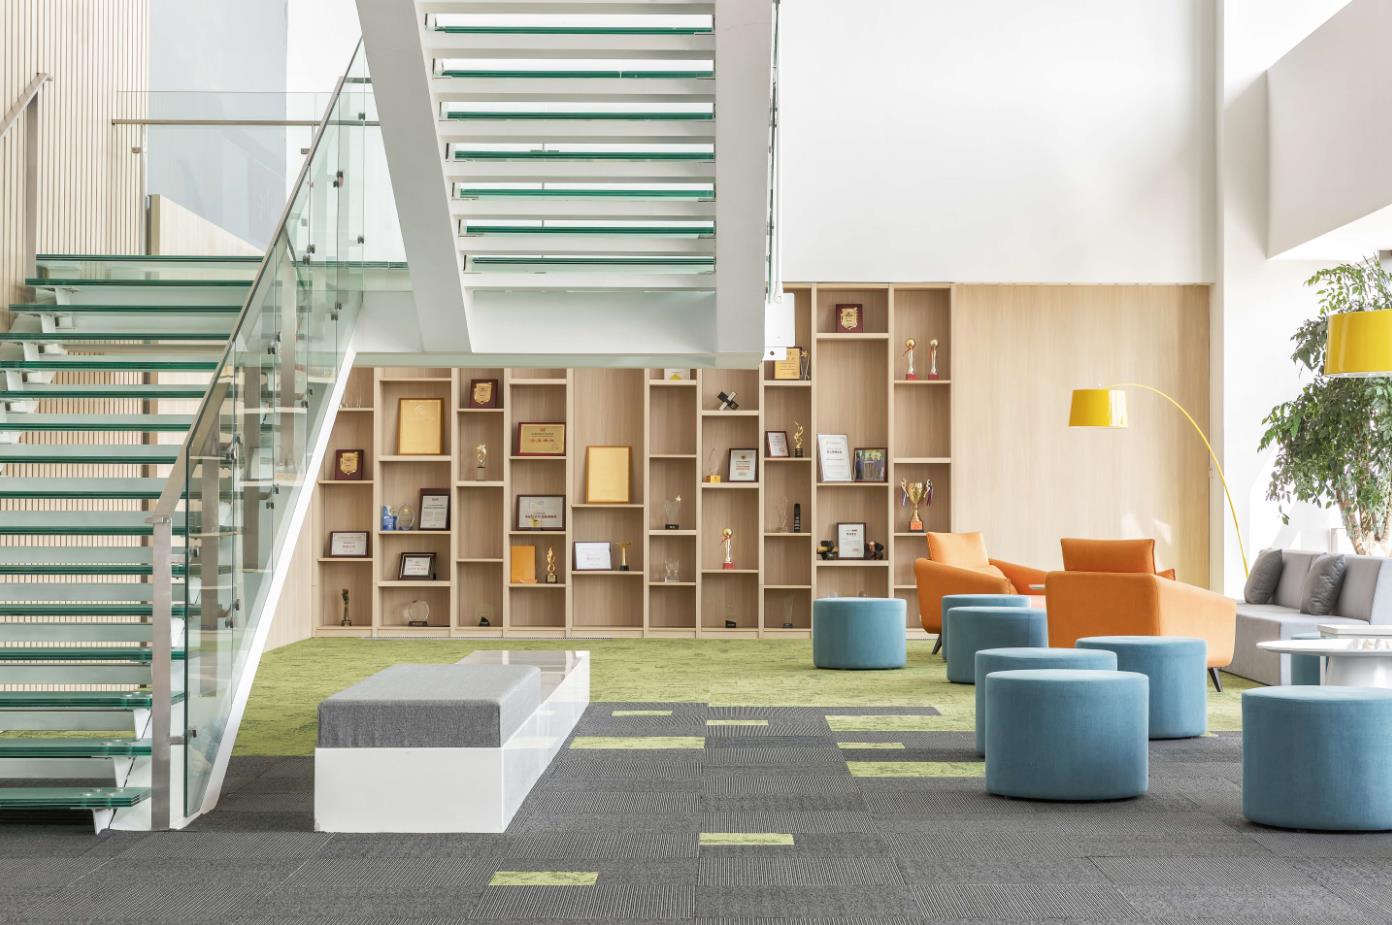 杰恩设计 | 联合泰康集团打造泰康在线职场办公空间设计